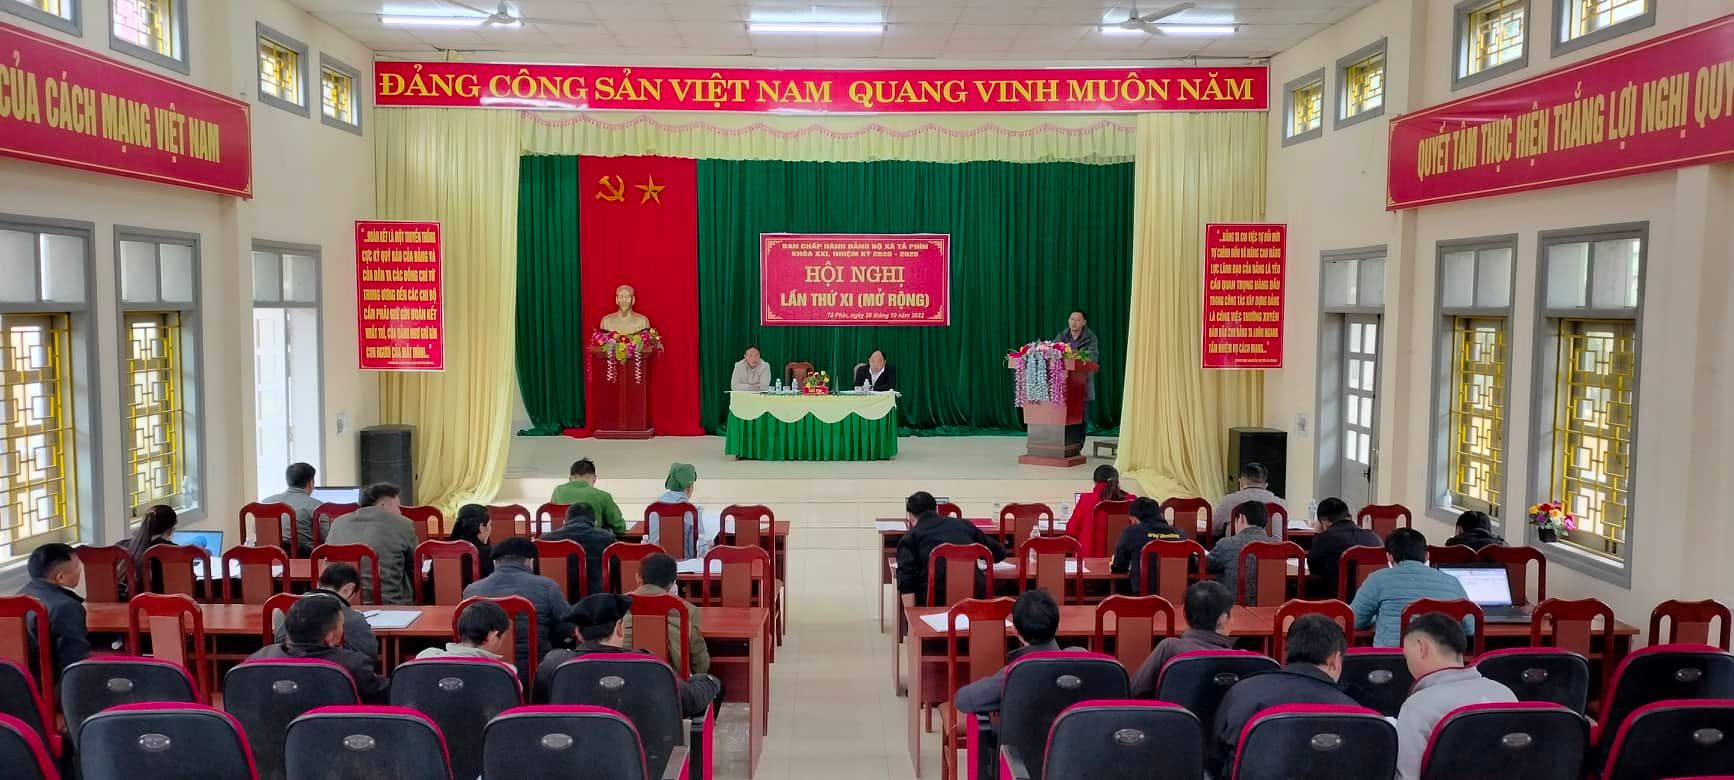 Tả Phìn tổ chức hội nghị Ban chấp hành Đảng bộ xã lần thứ XI (mở rộng)